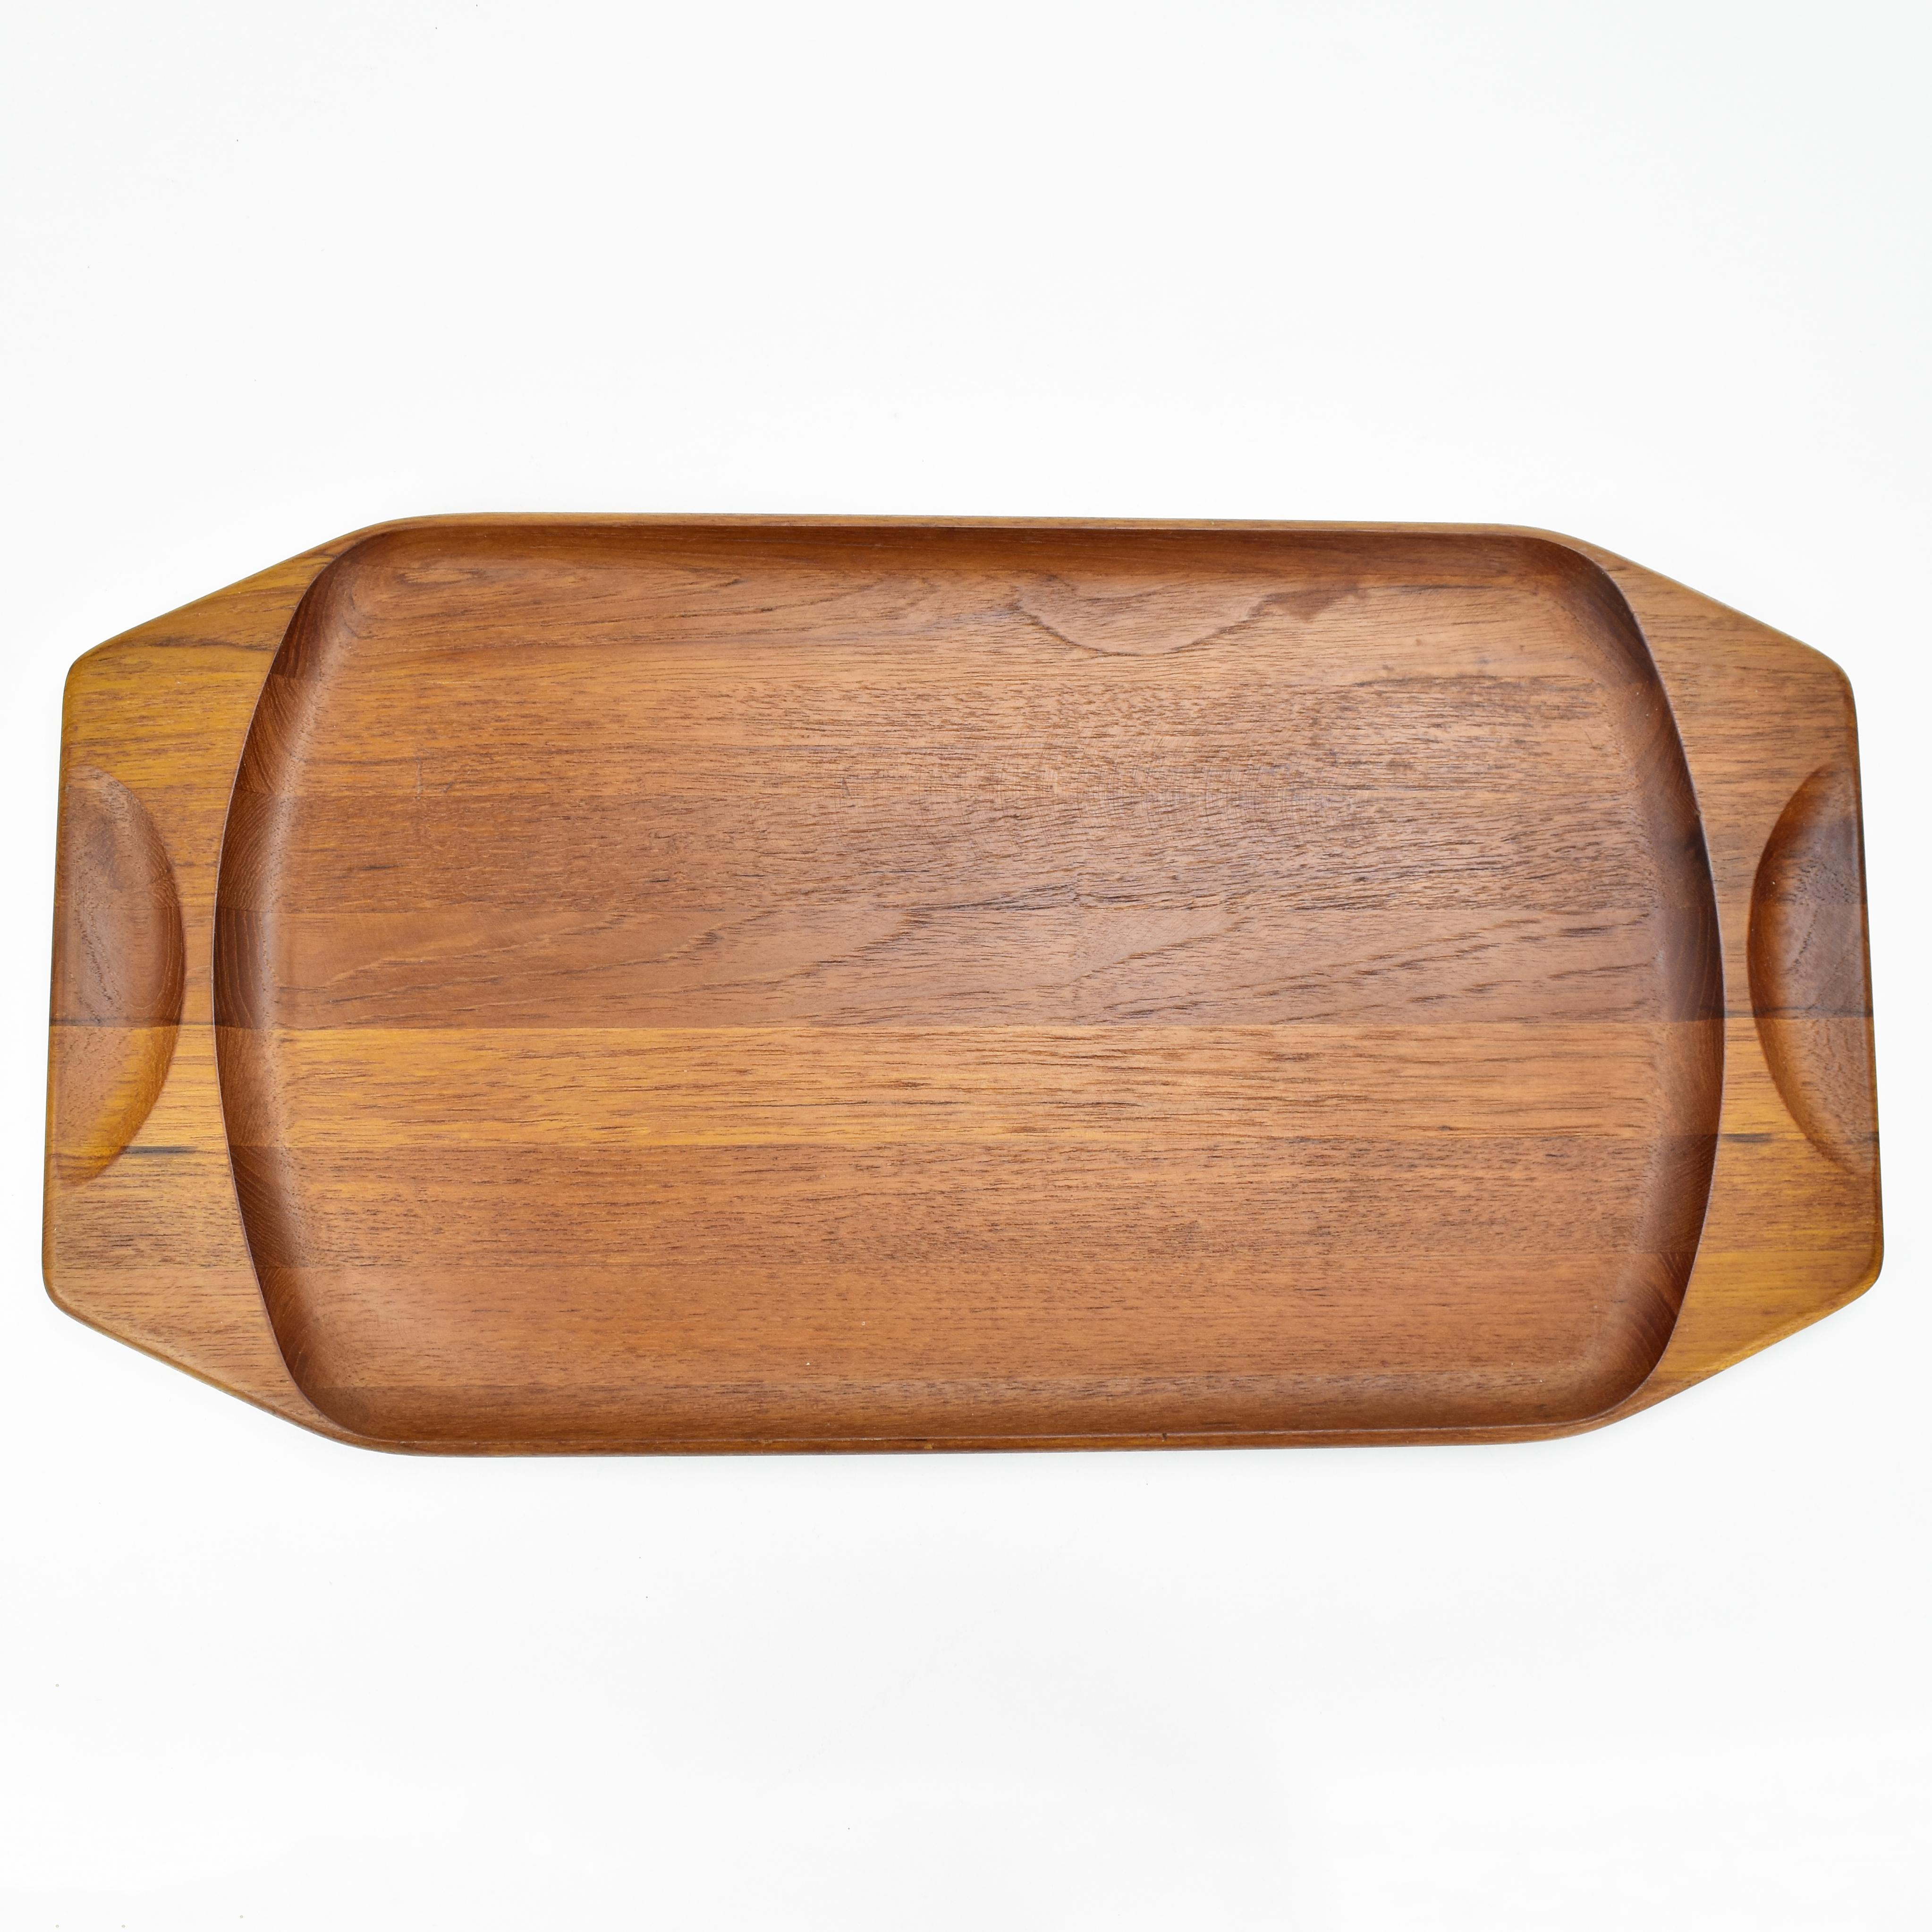 Ein wunderschönes Teakholz-Tablett aus den 1950er Jahren mit klarem Rand, von dem berühmten dänischen Designer Jens Quistgaard. Ein charmantes und nützliches Objekt in sehr gutem Zustand.